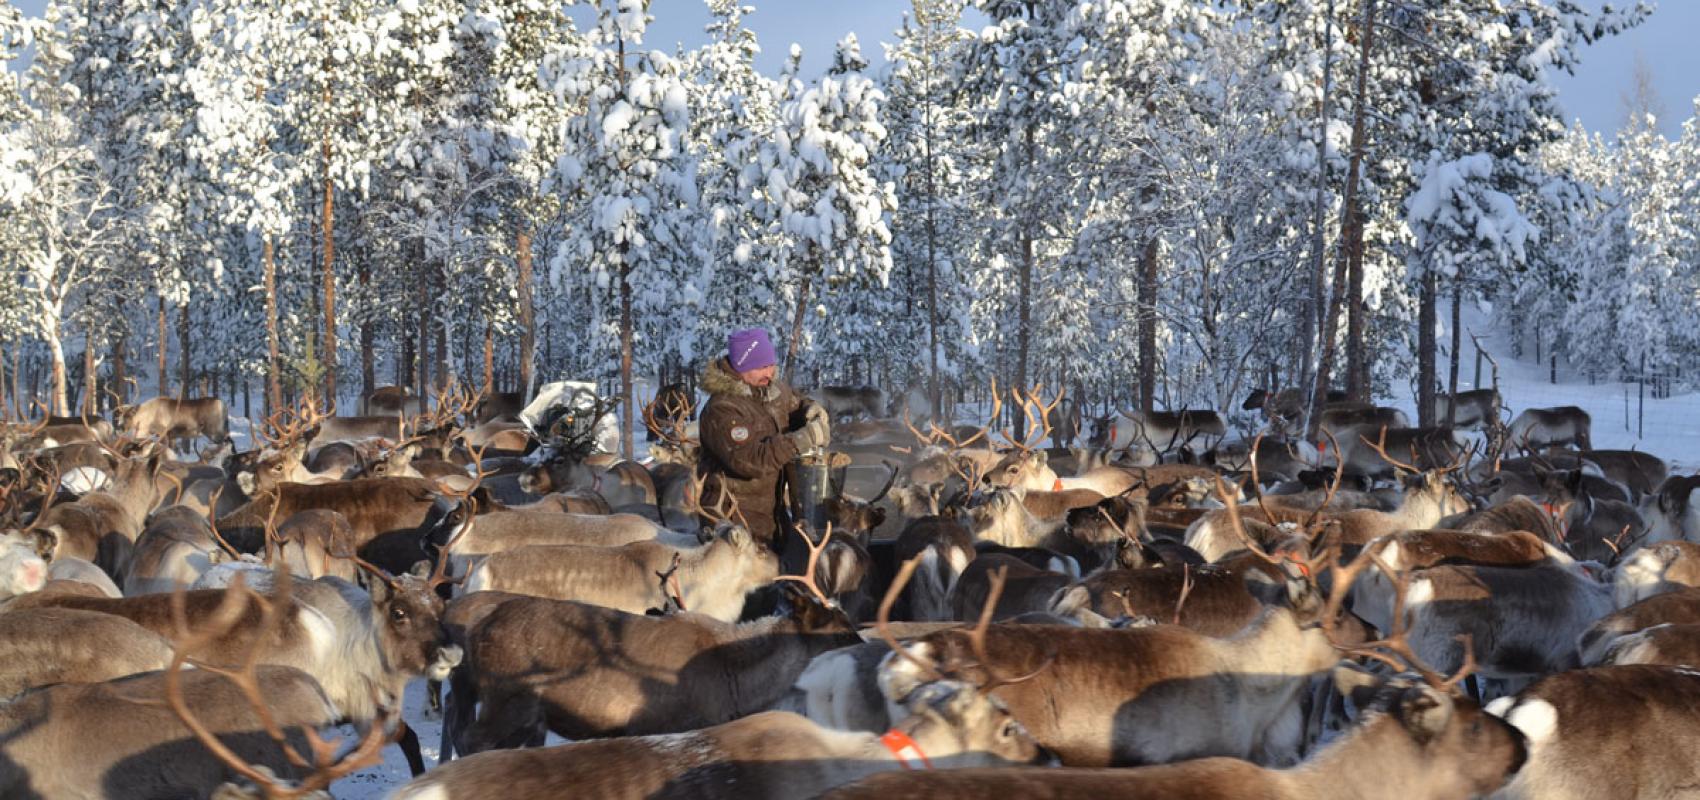 Un éleveur de rennes Sámi distribuant des aliments sous forme de granulés à son troupeau, une pratique devenue courante pour faire face à la dégradation des pâturages en forêt boréale, février 2022 -  - Samuel Roturier